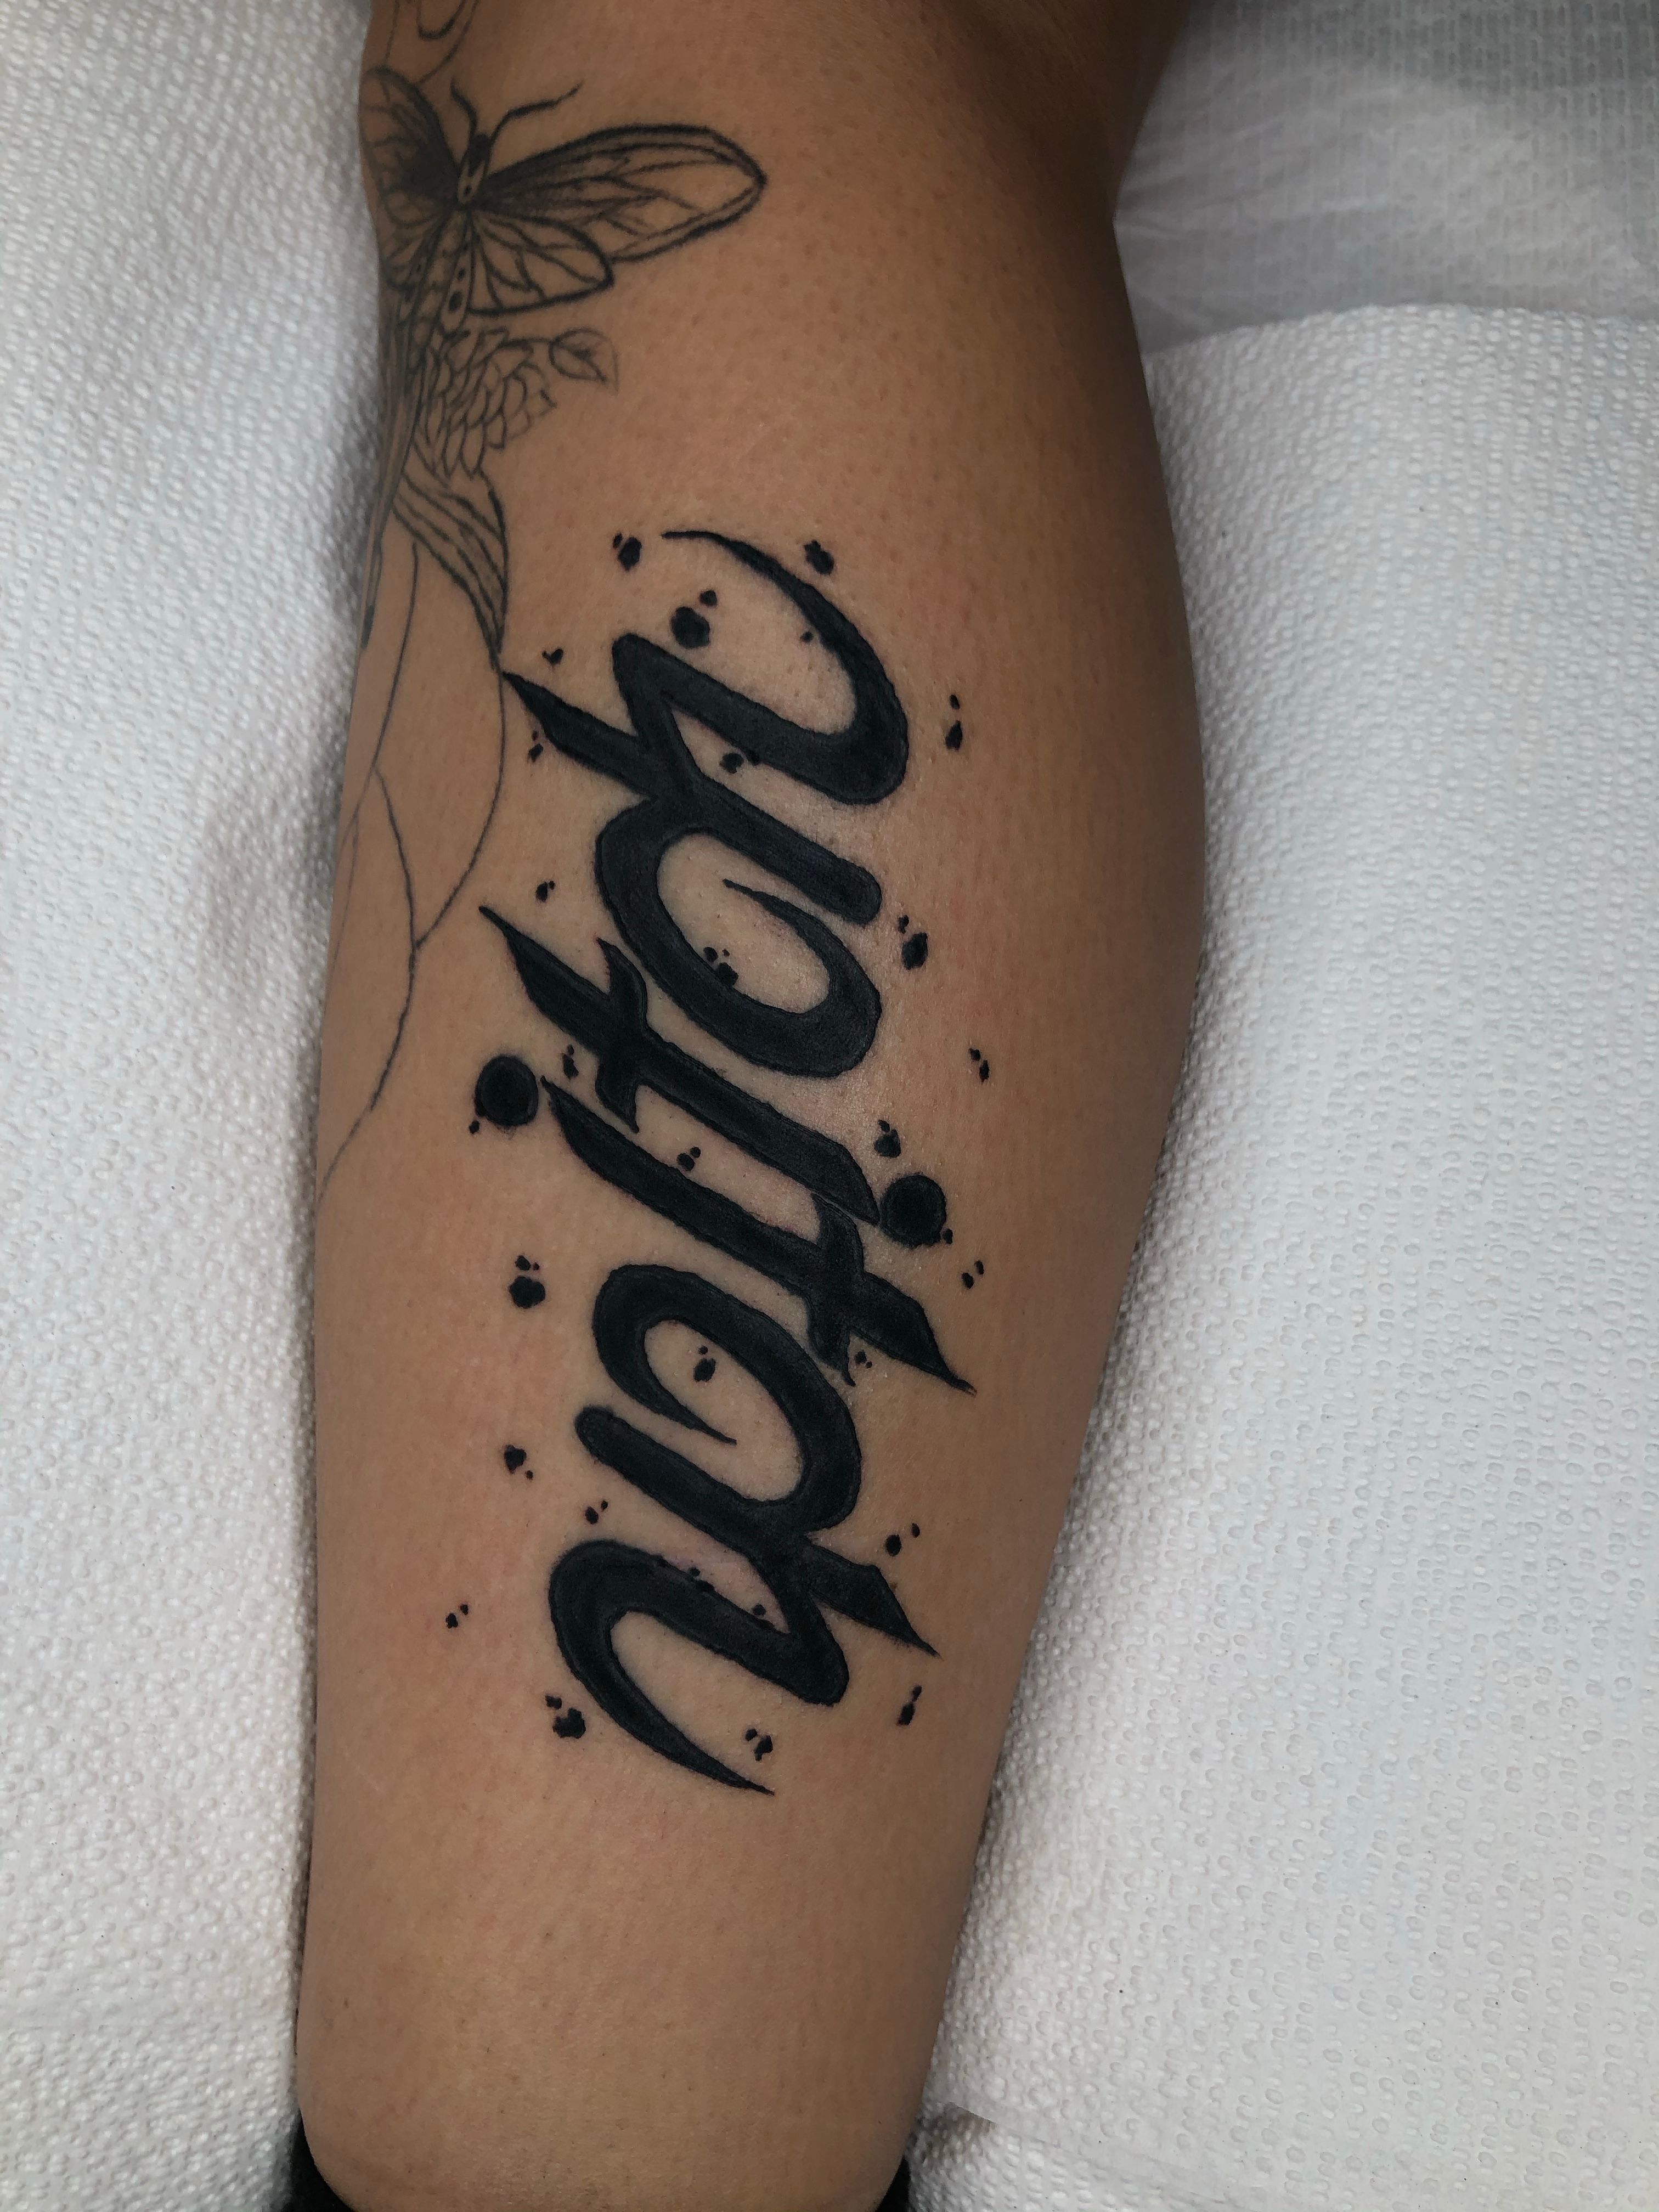 Om trishul armband tattoo | customised polynesian armband | Finger tattoos,  Arm band tattoo, Tattoos